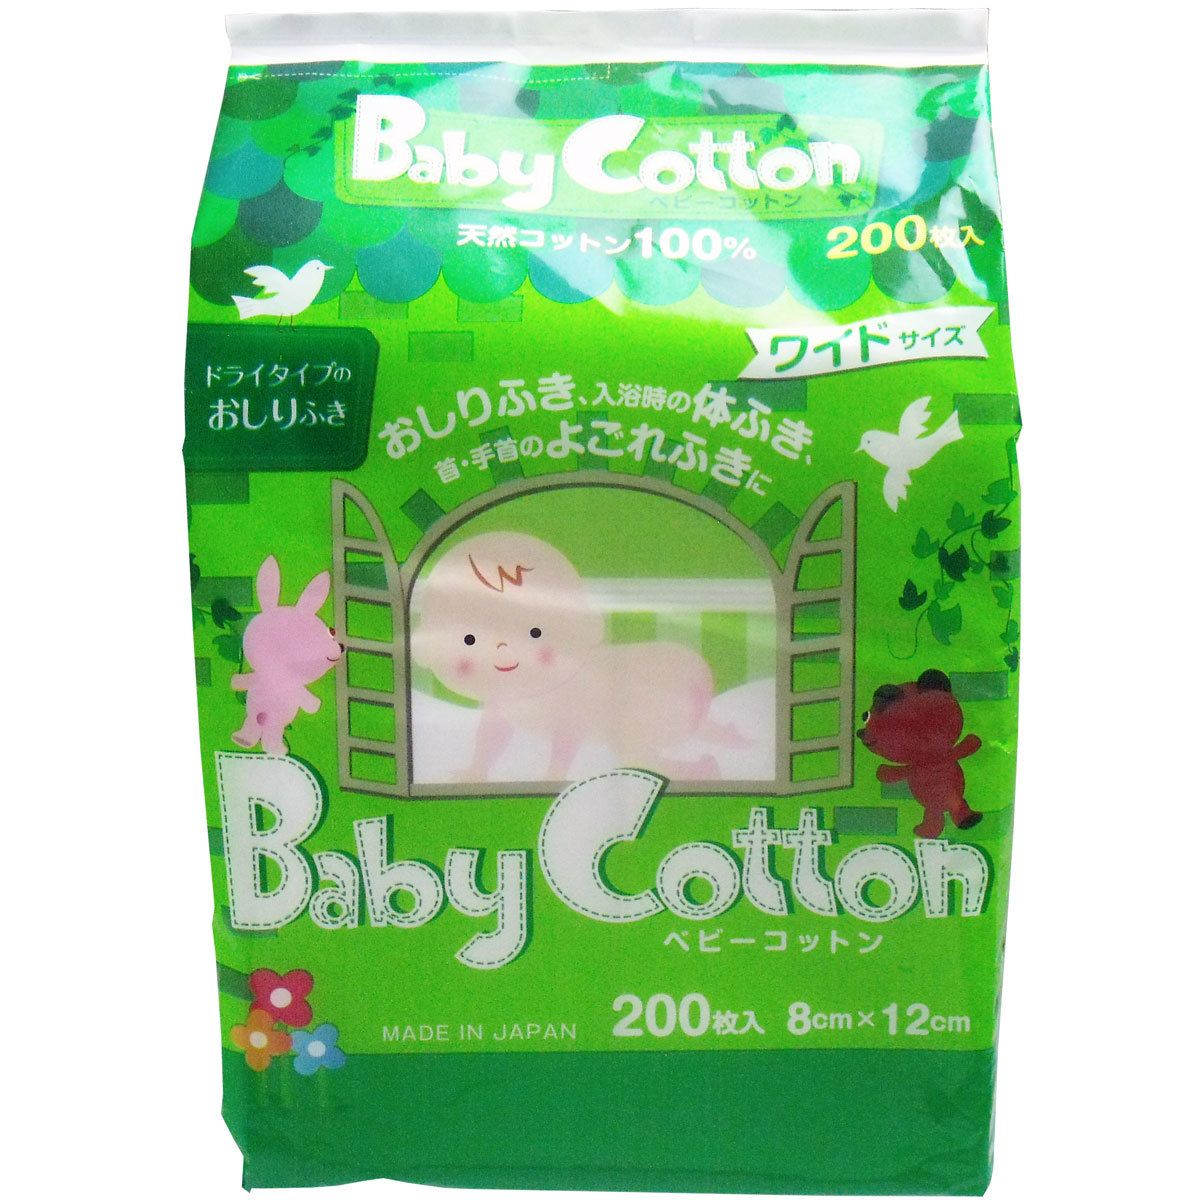  summarize profit baby cotton napkins natural cotton 100% wide size 8cm×12cm 200 sheets insertion x [6 piece ] /k